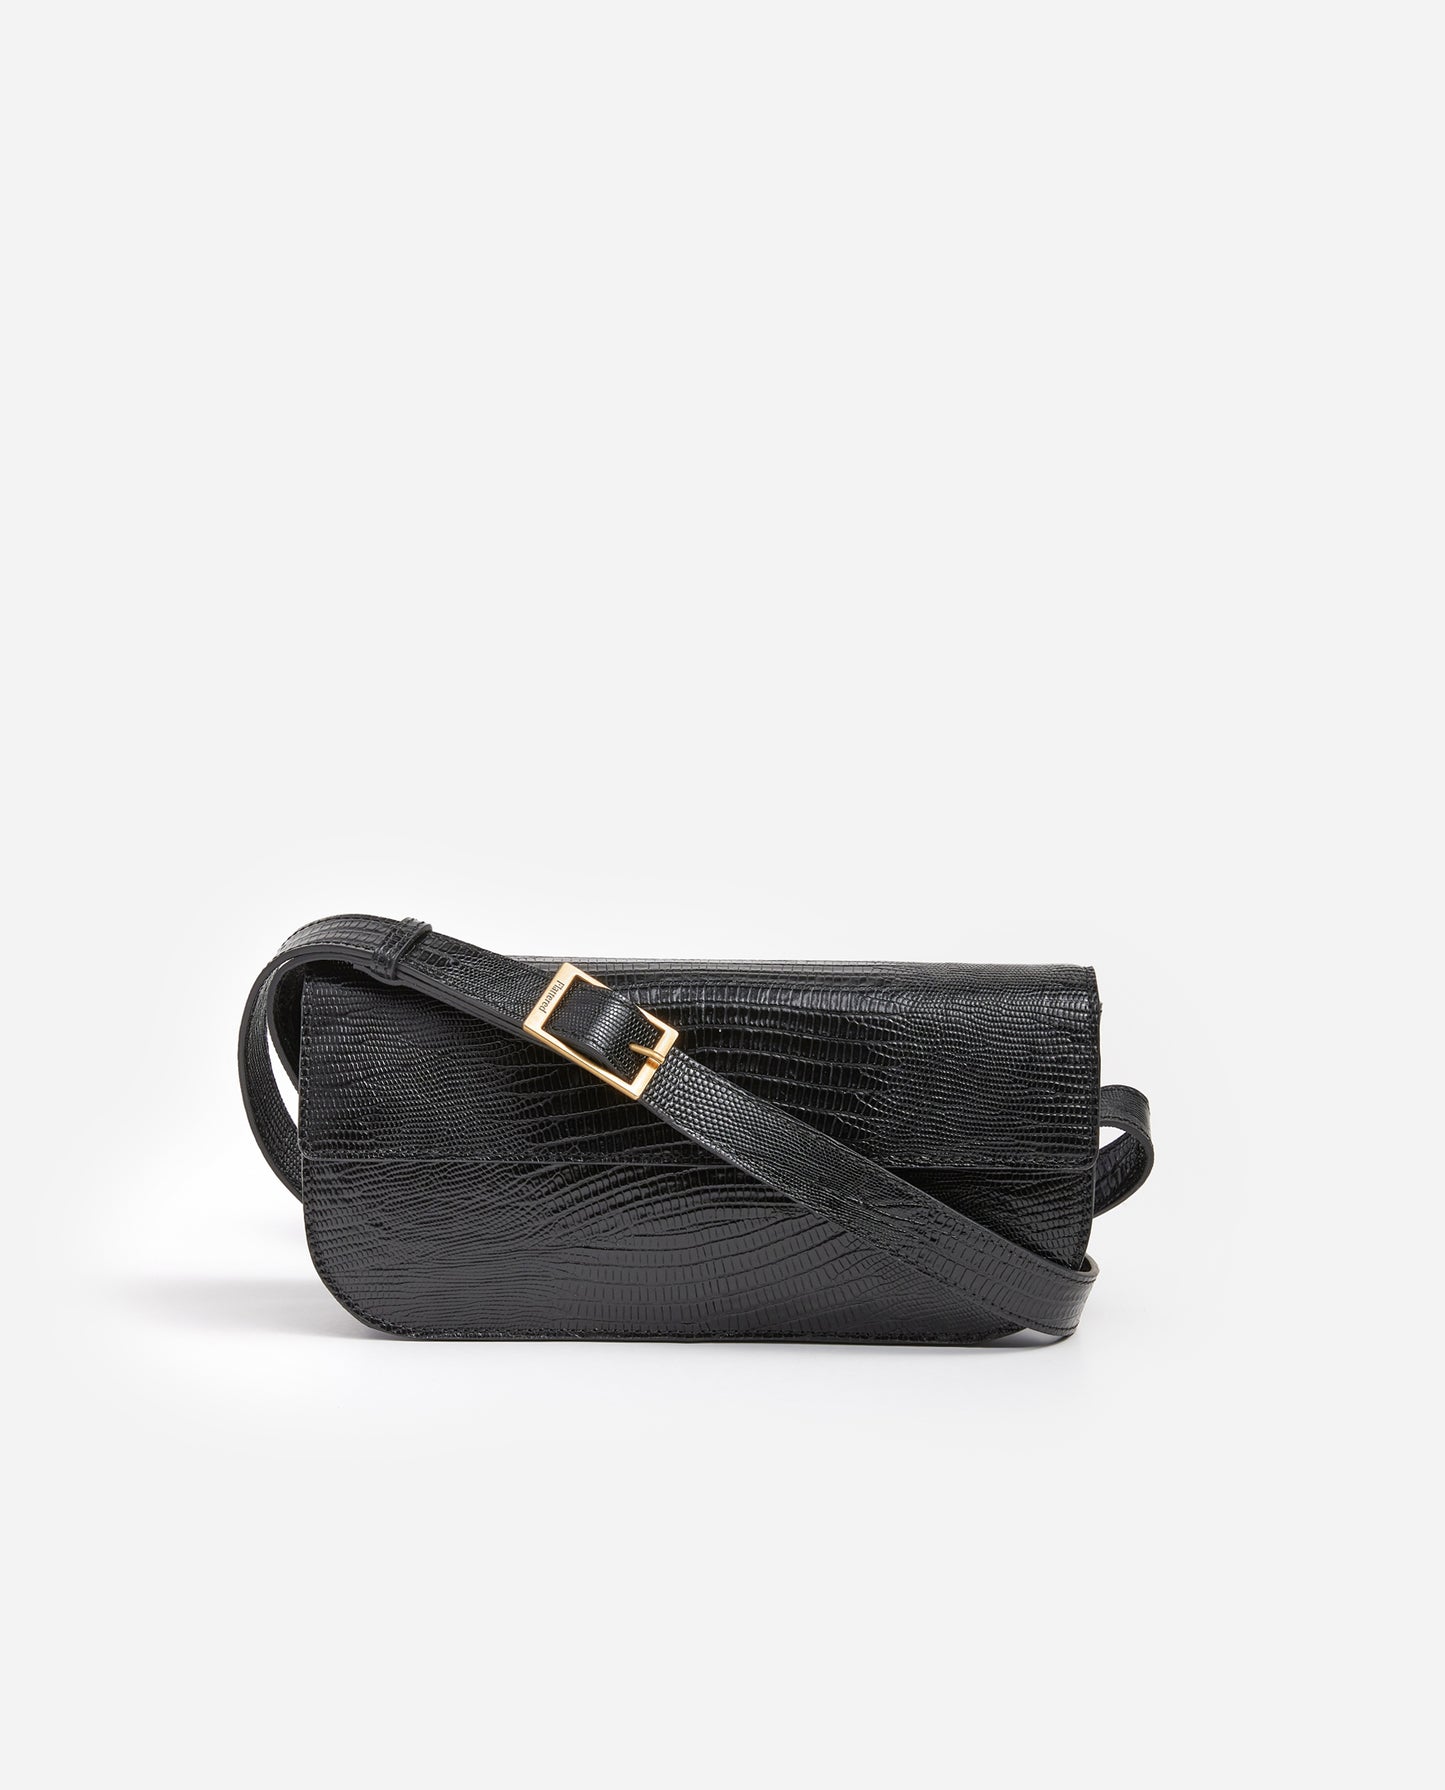 Lillie Shoulder Bag Black Lizzard Leather